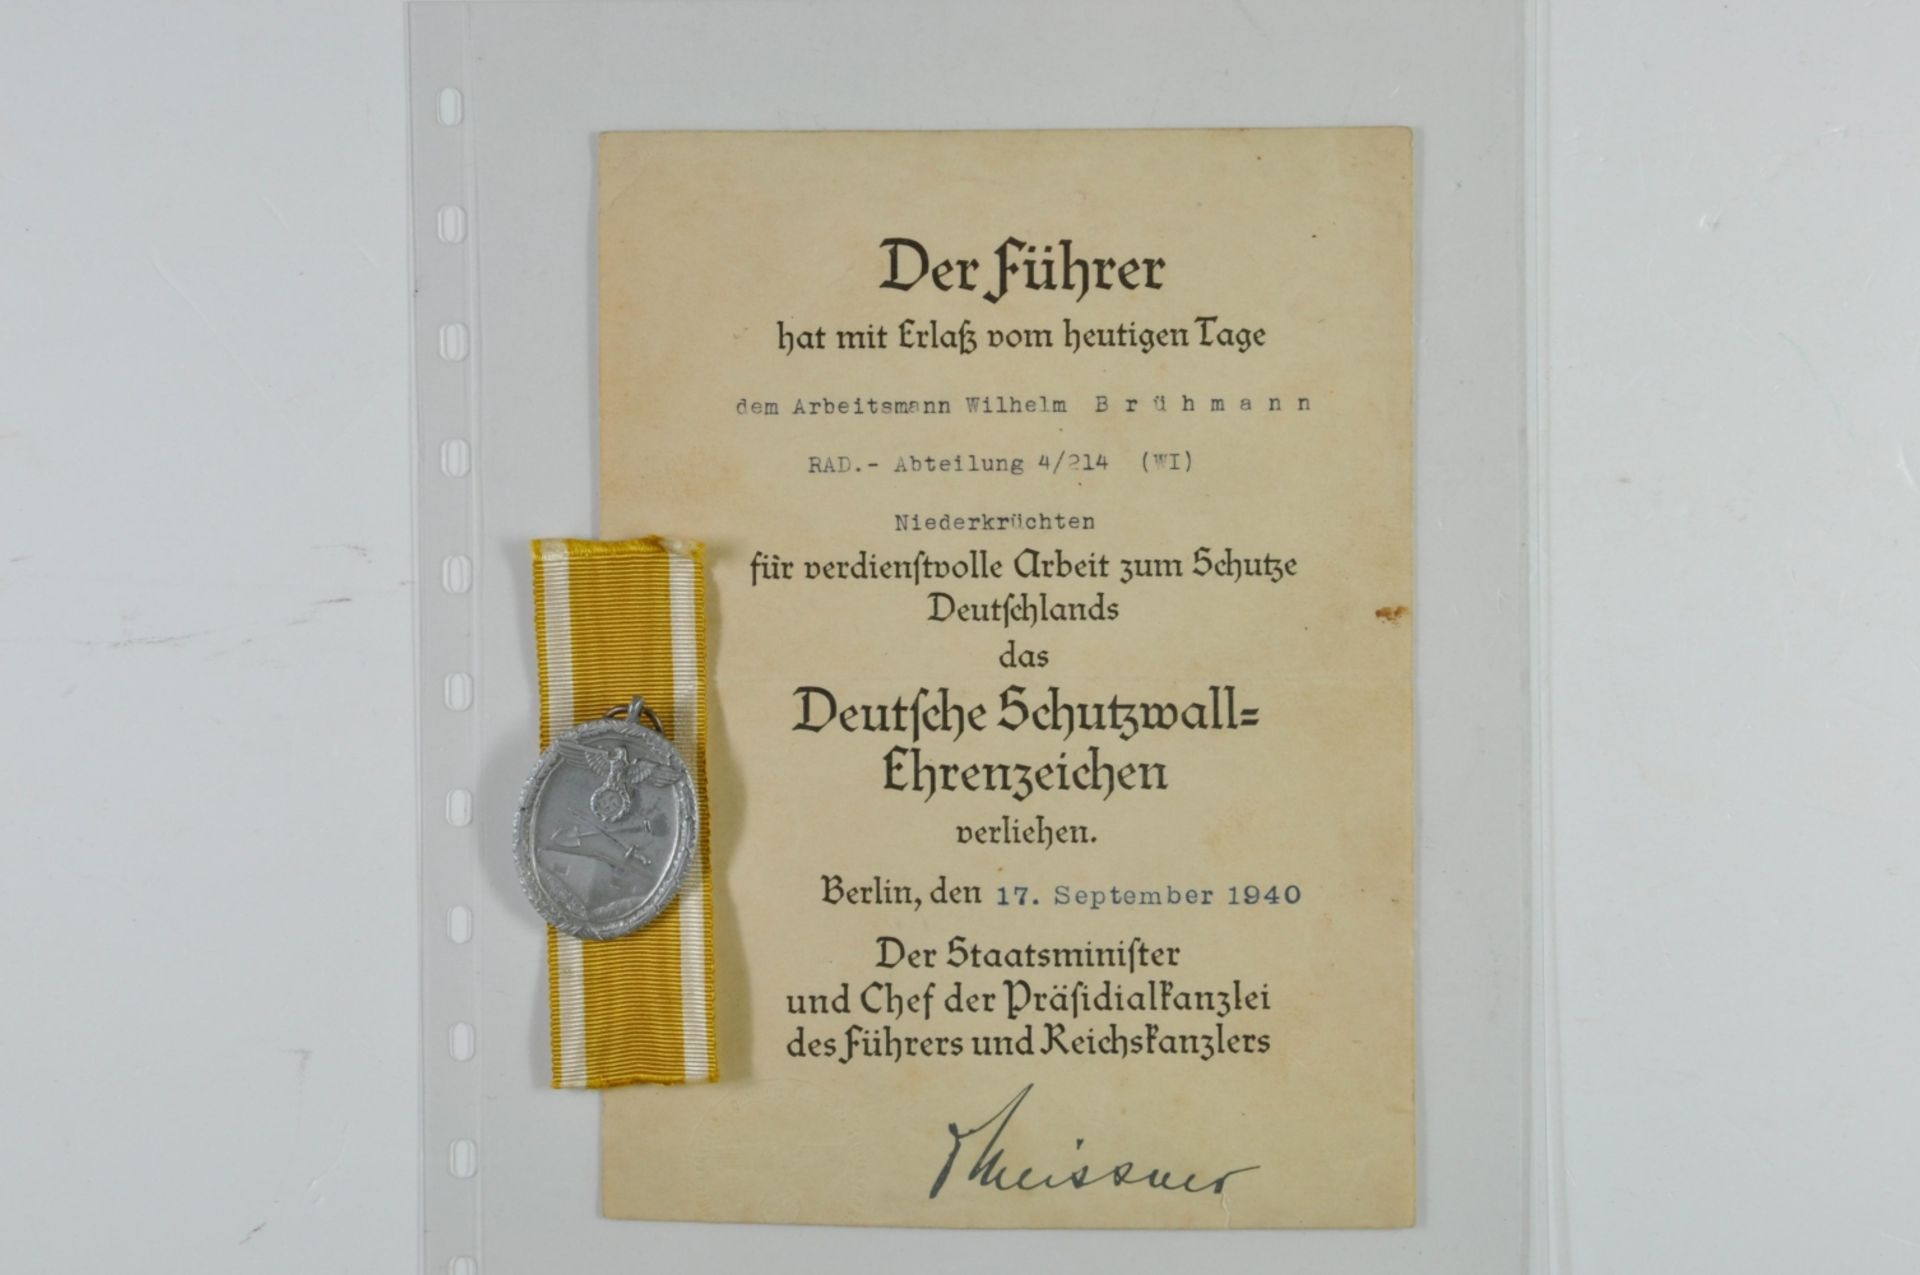 Verleihungsurkunde eines Arbeitsmann für das Deutsche Schutzwall-Ehrenzeichen, datiert Berlin den 17